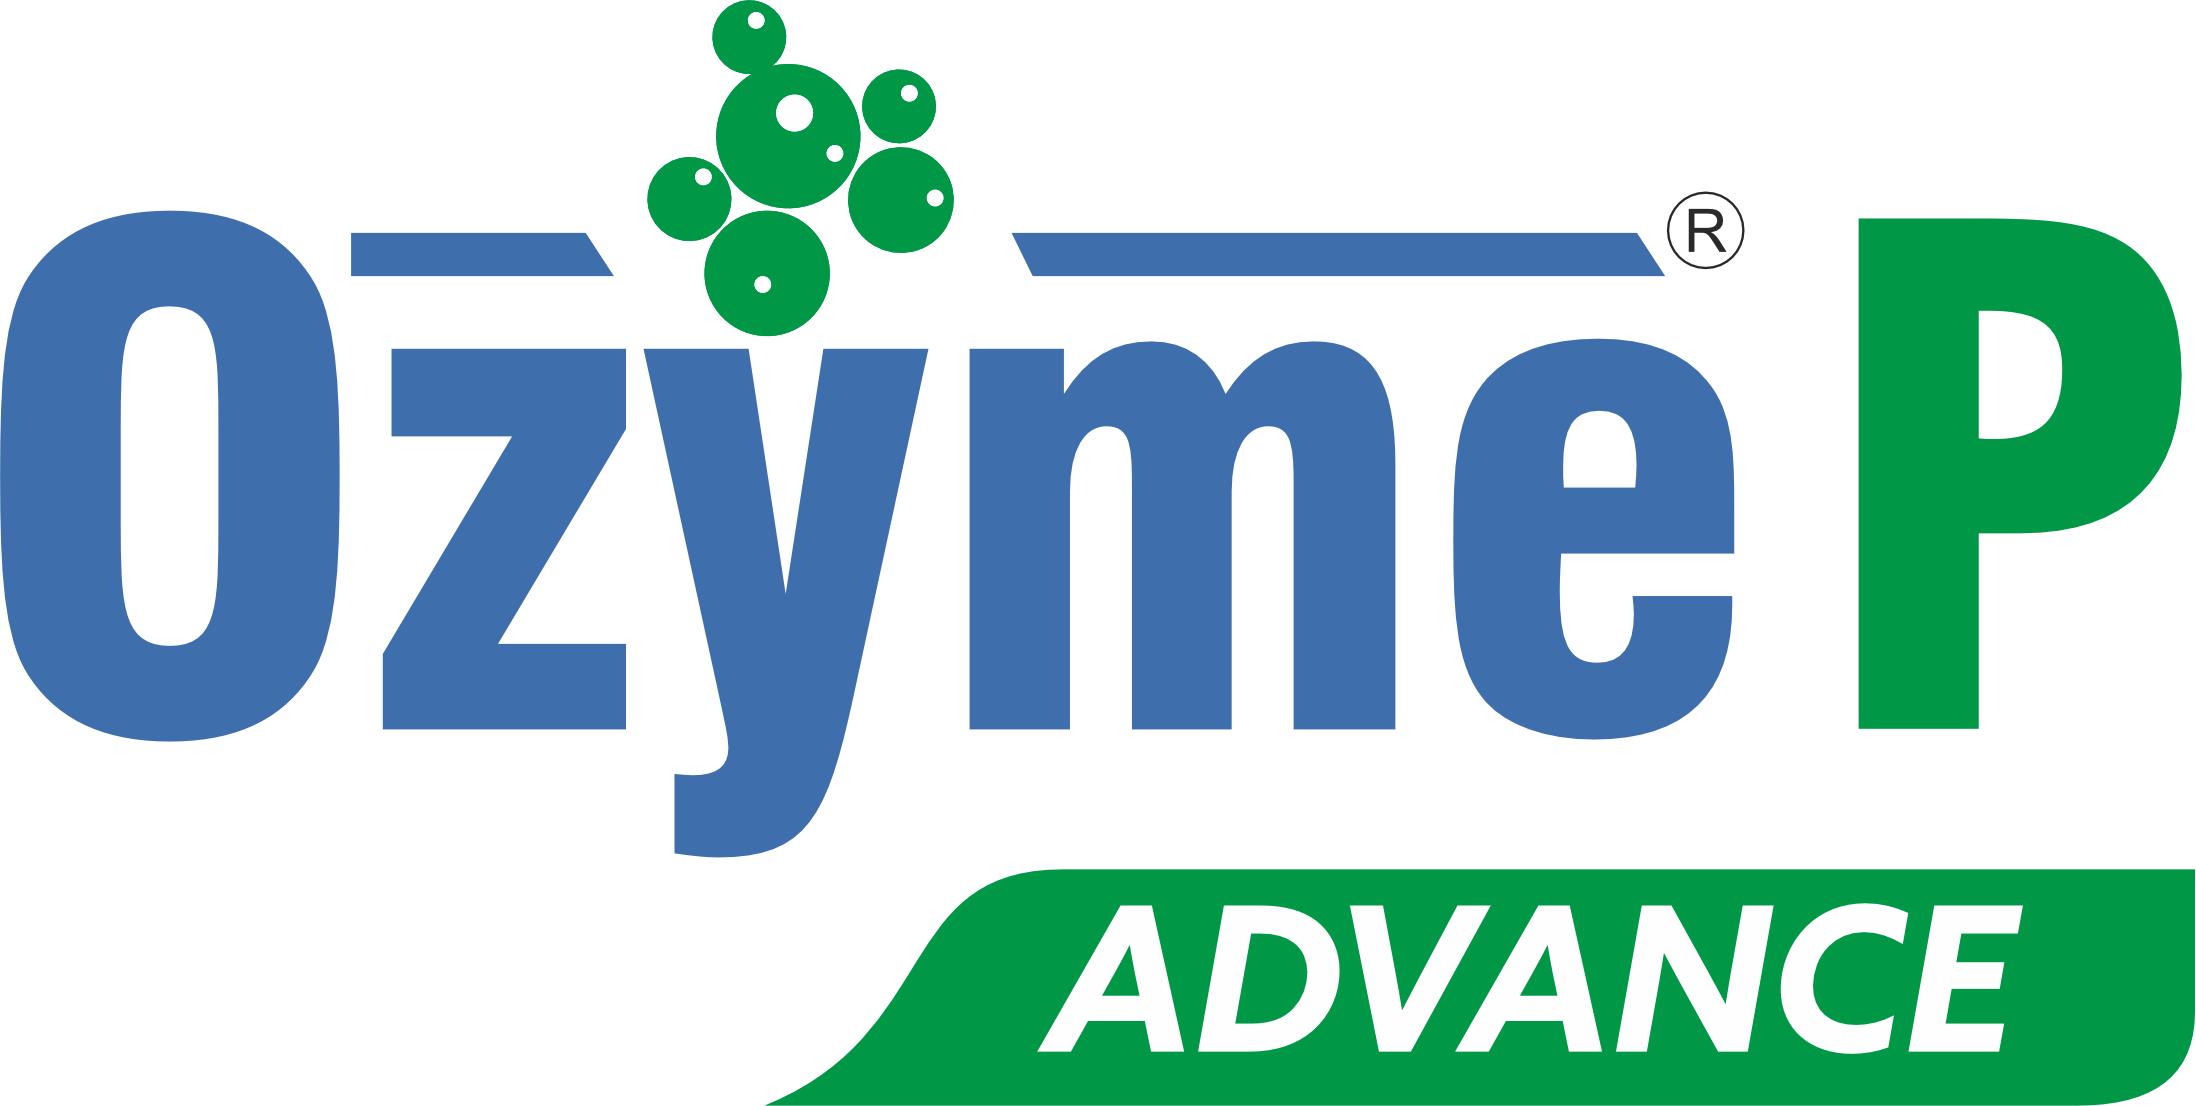 Ozyme P Advamce Logo